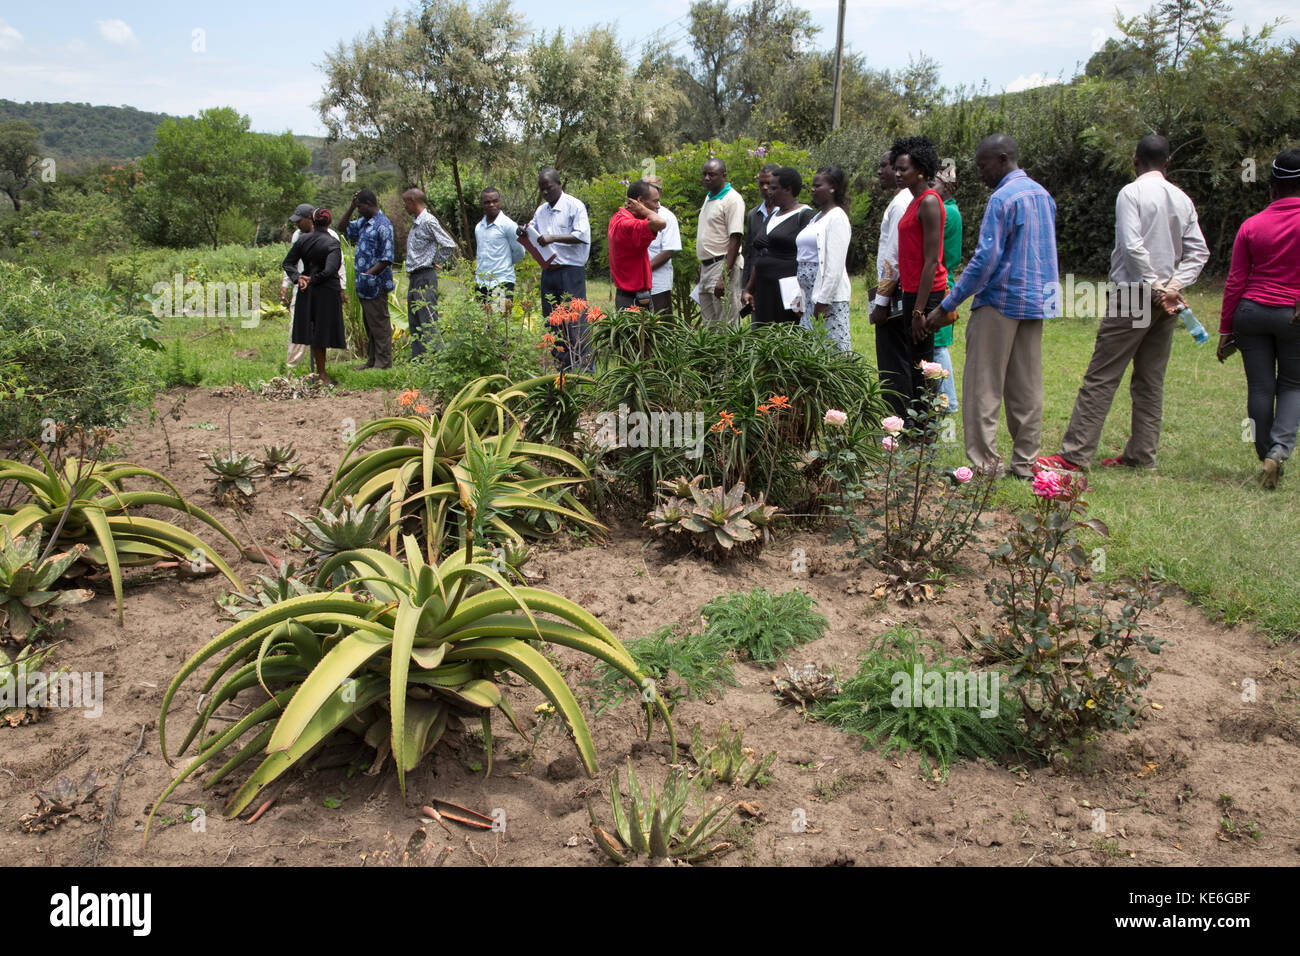 Les enseignants africains visiter un jardin de fines herbes avec des plantes médicinales pour faire redémarrer la médecine traditionnelle au Kenya Afrique gilgil Banque D'Images